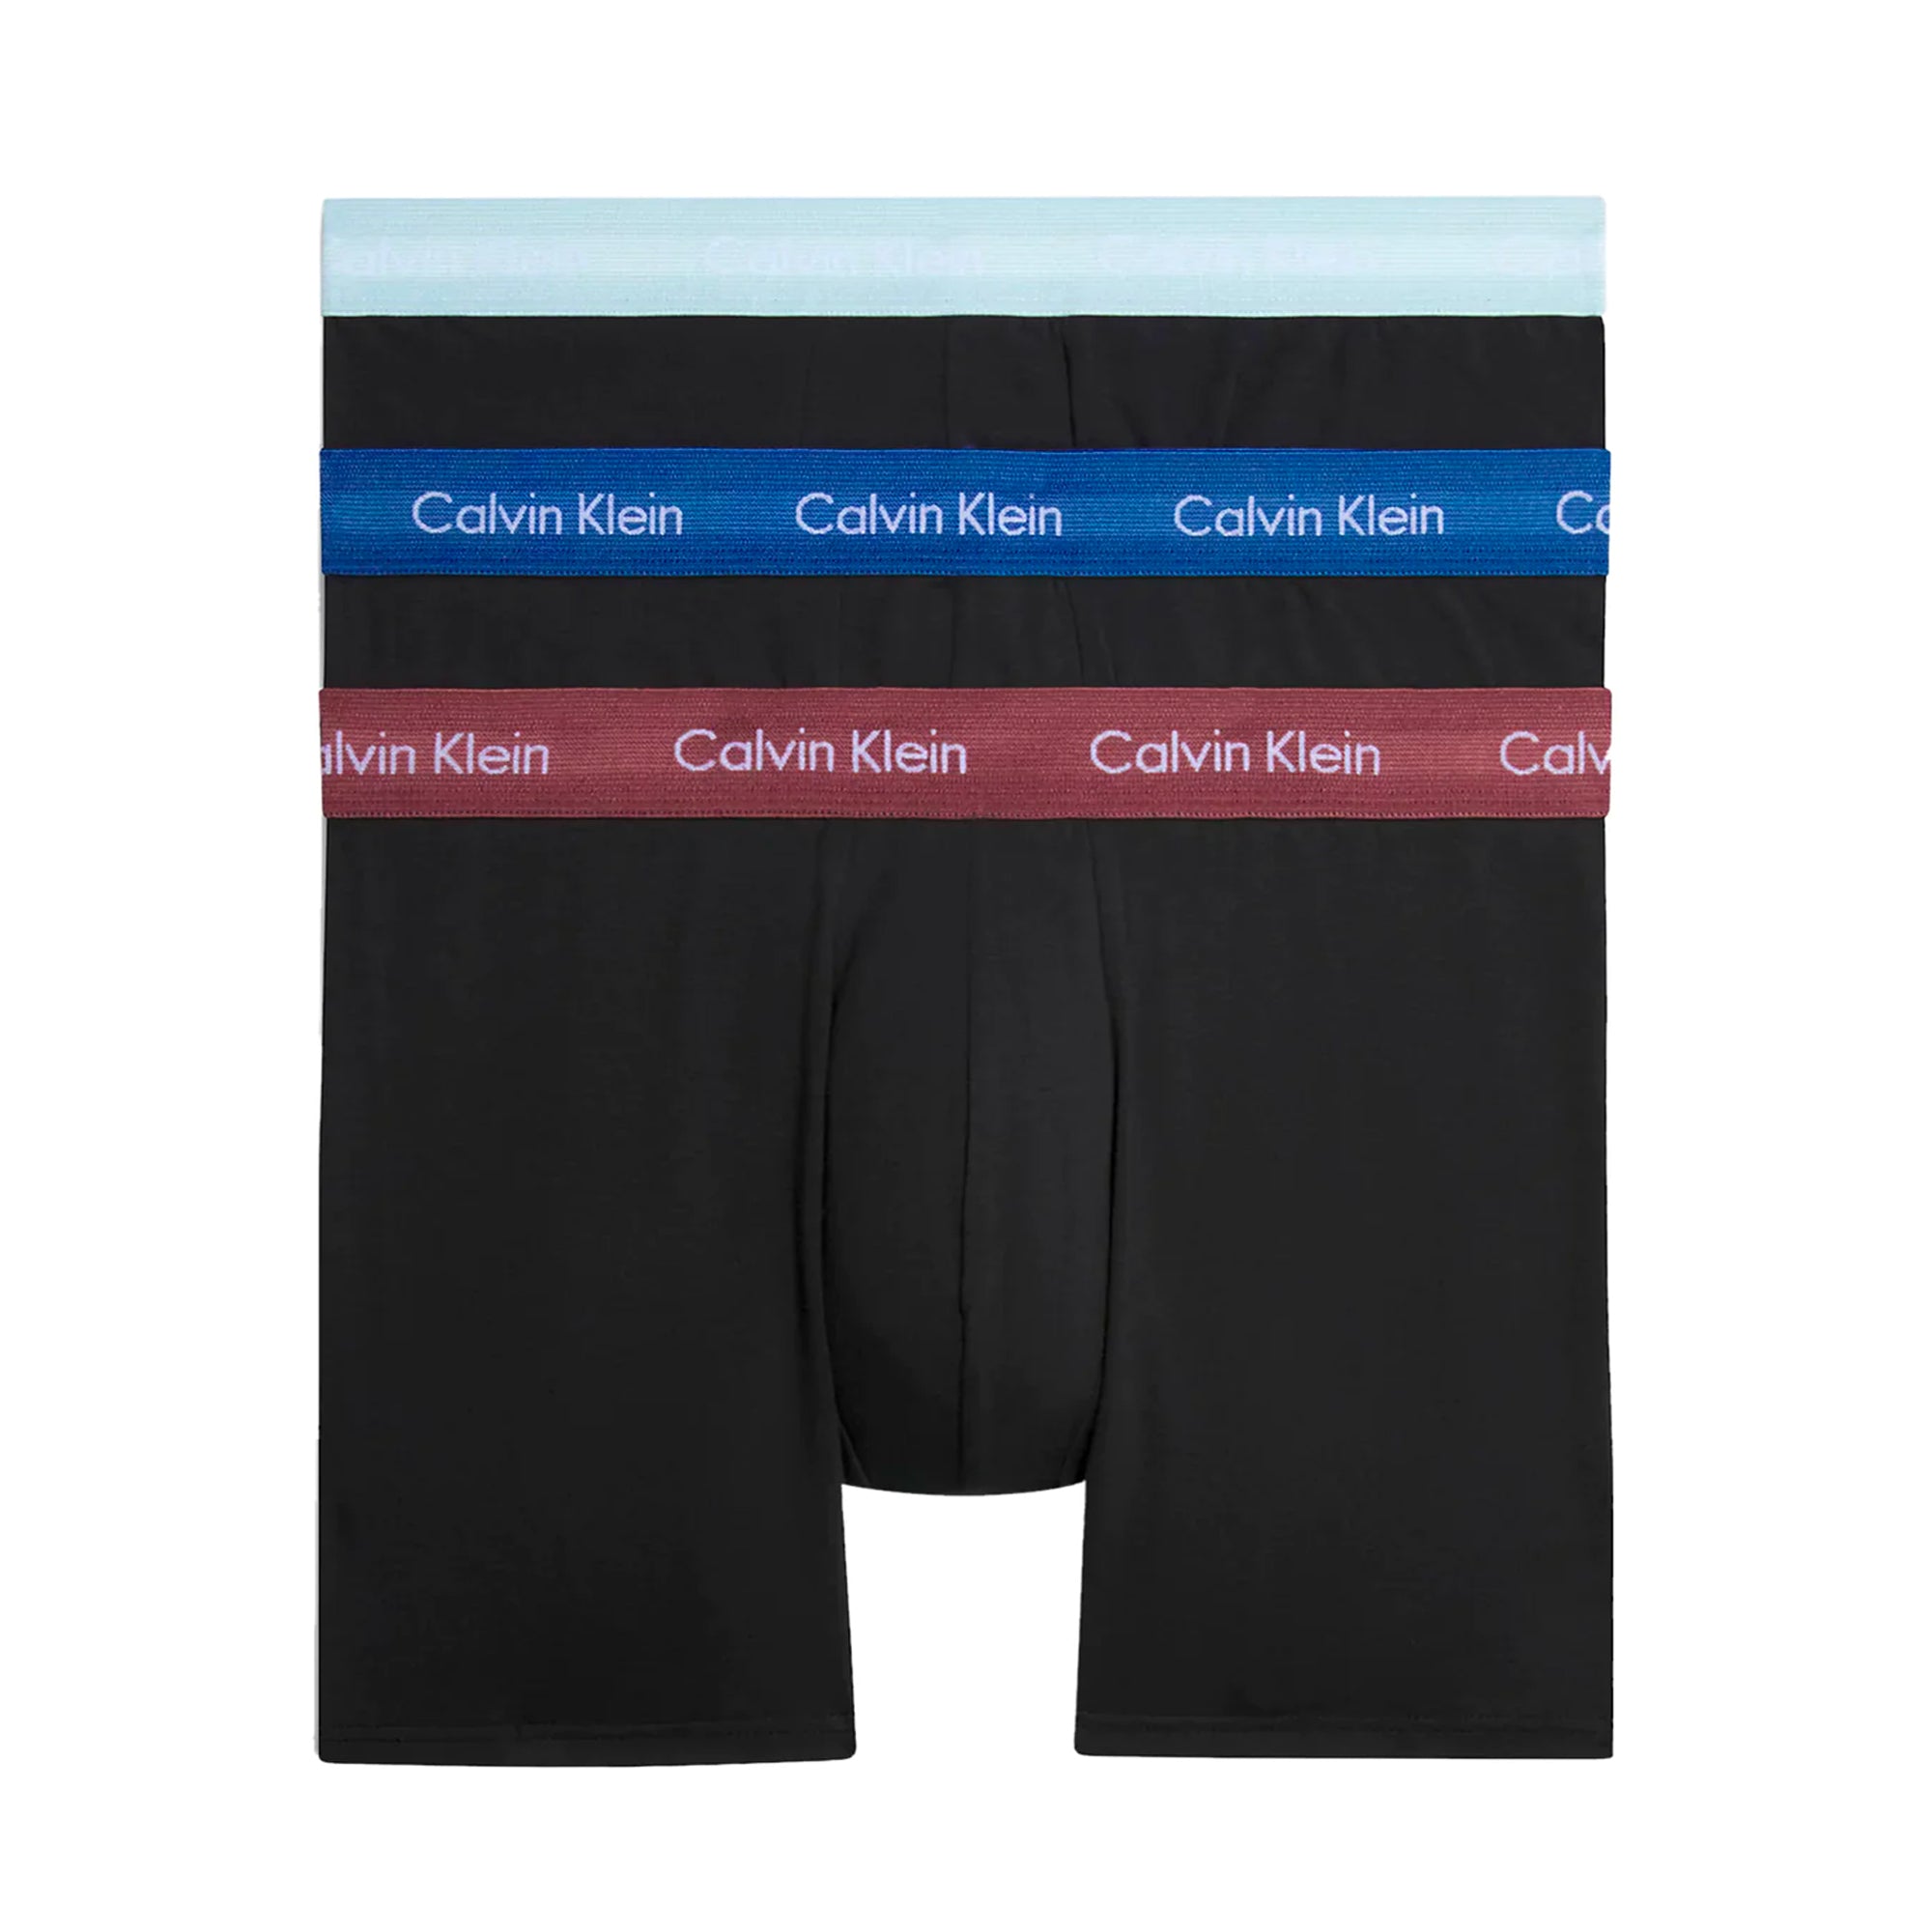 Calvin Klein Cotton Stretch Boxer Brief - Maroon / Skyway / True Navy